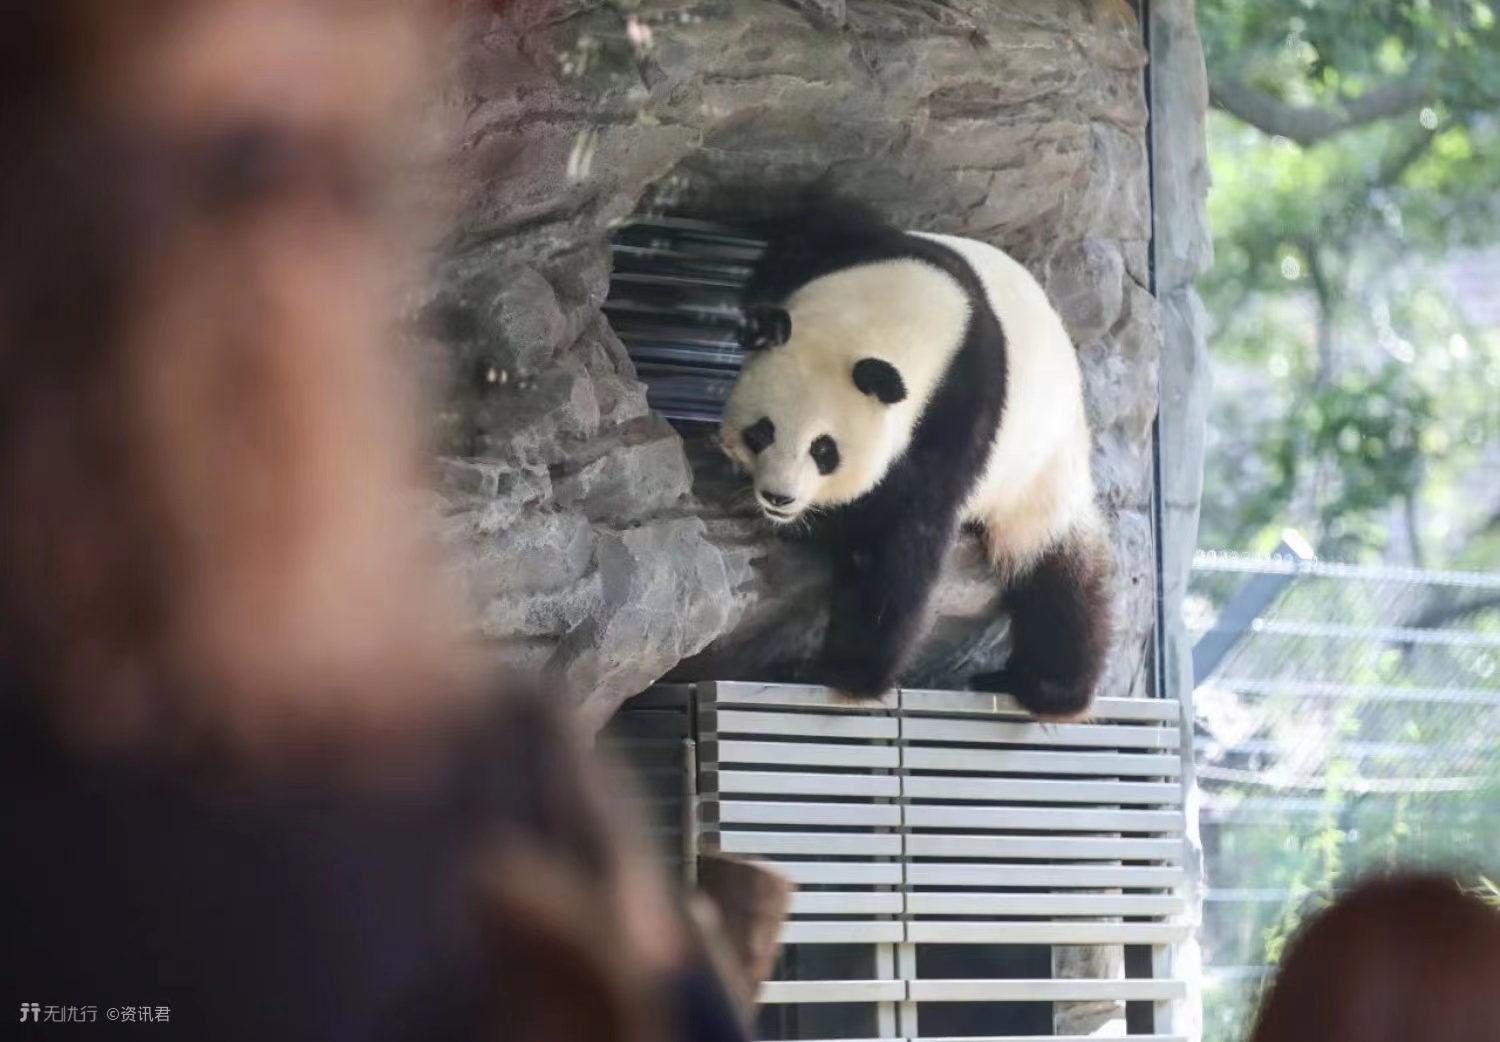 大熊猫生活在什么地方? 熊猫生活在我国的哪里